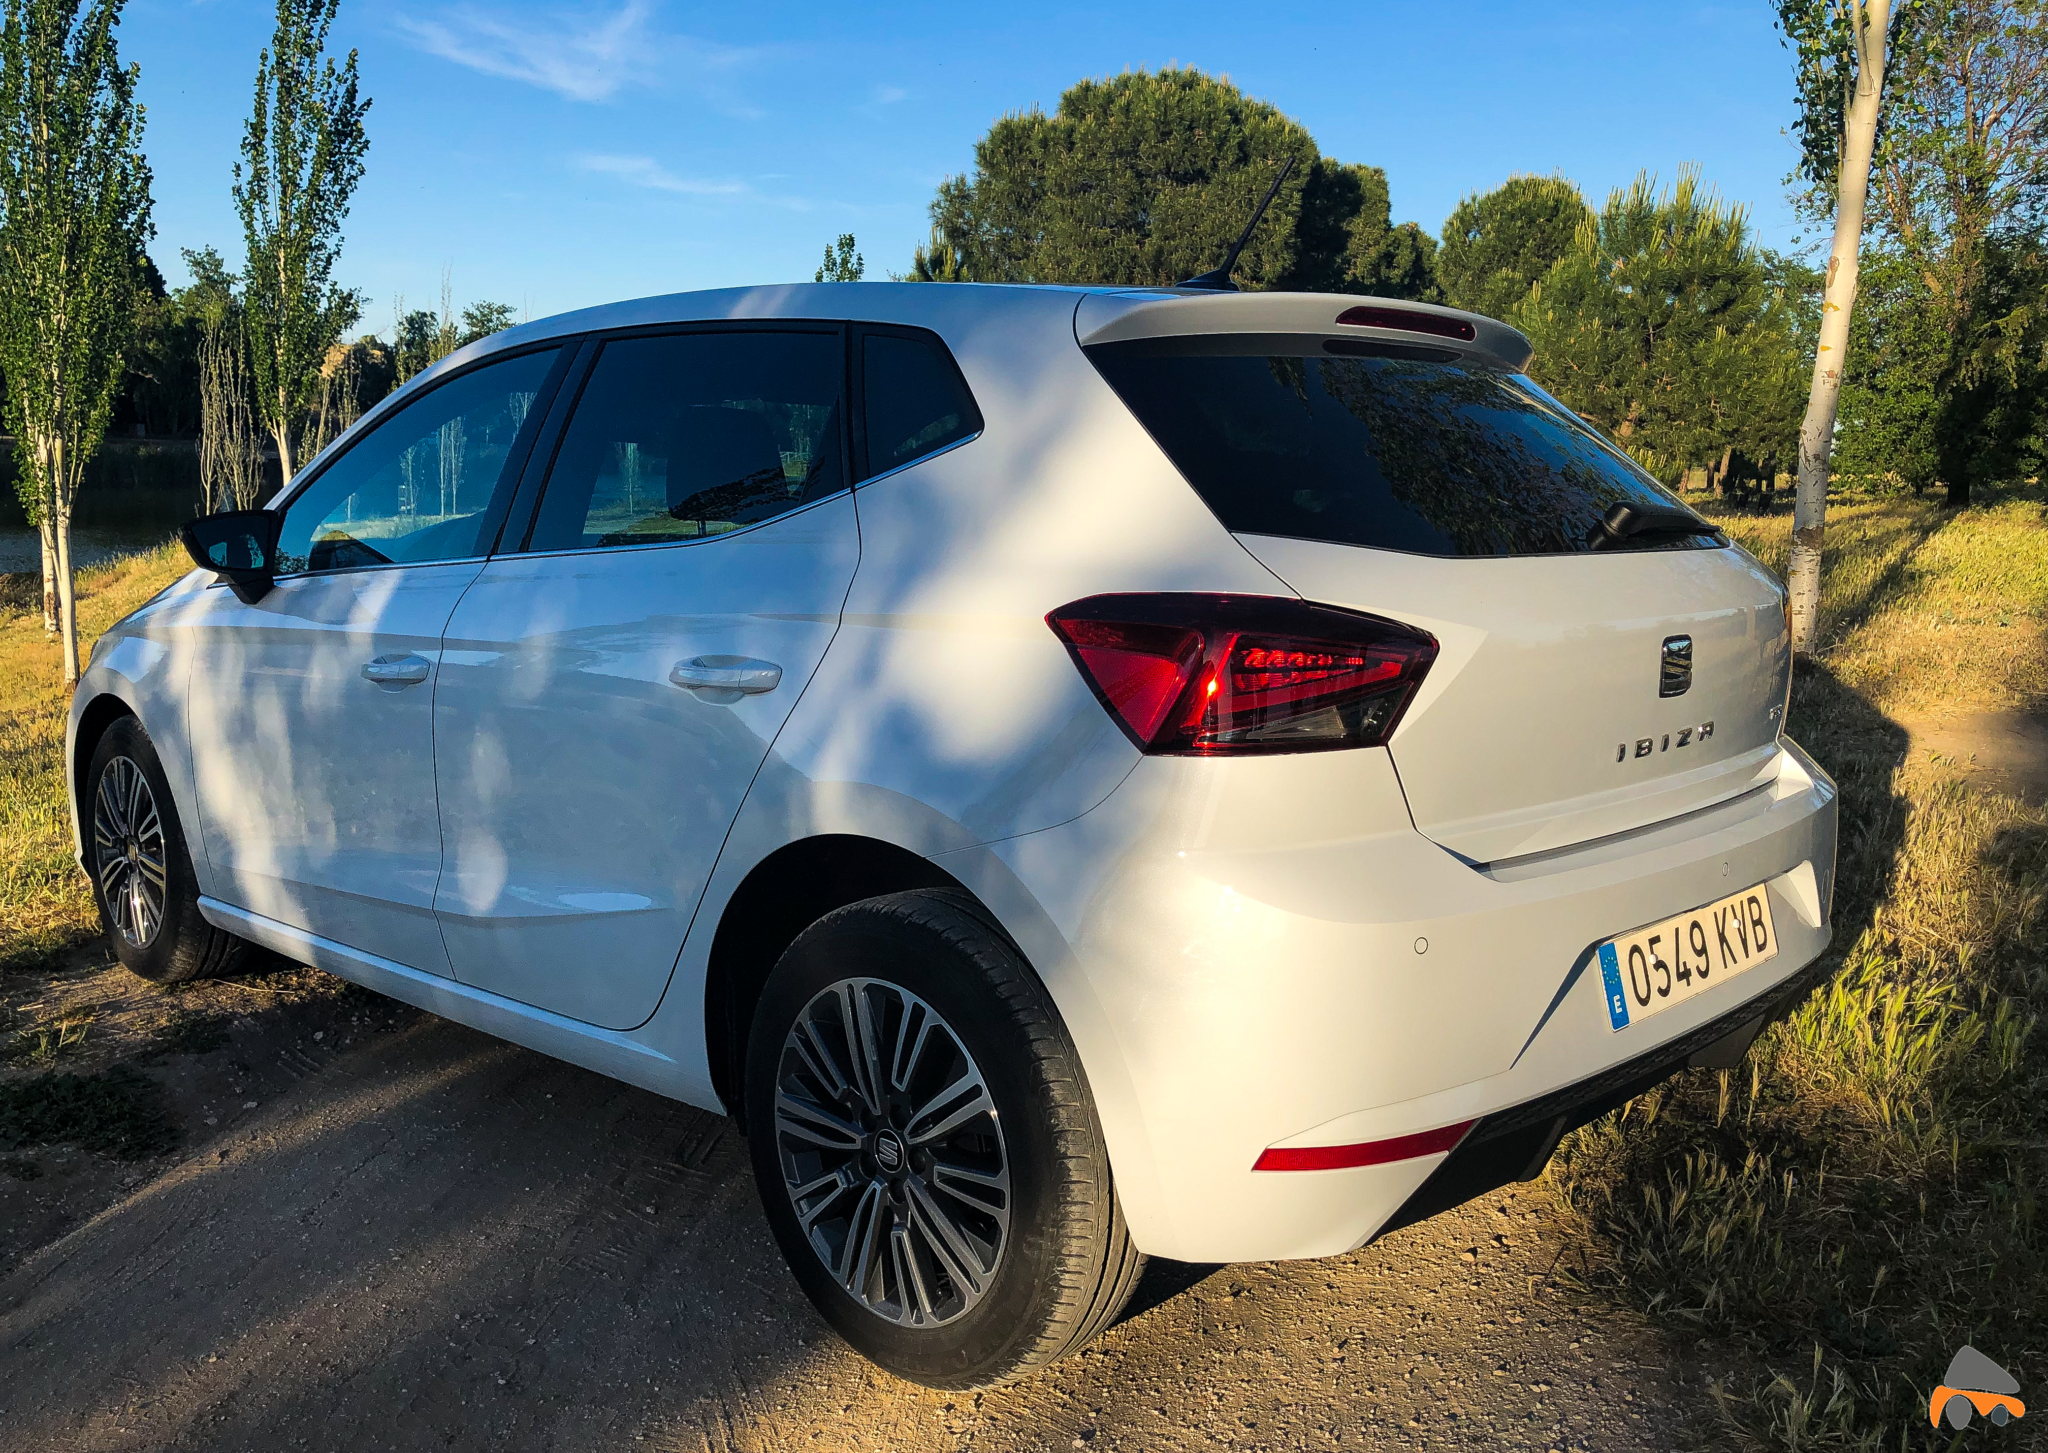 Trasera lateral izquierdo Seat Ibiza - Seat Ibiza TGI Xcellence 2019: Una buena decisión para los jóvenes